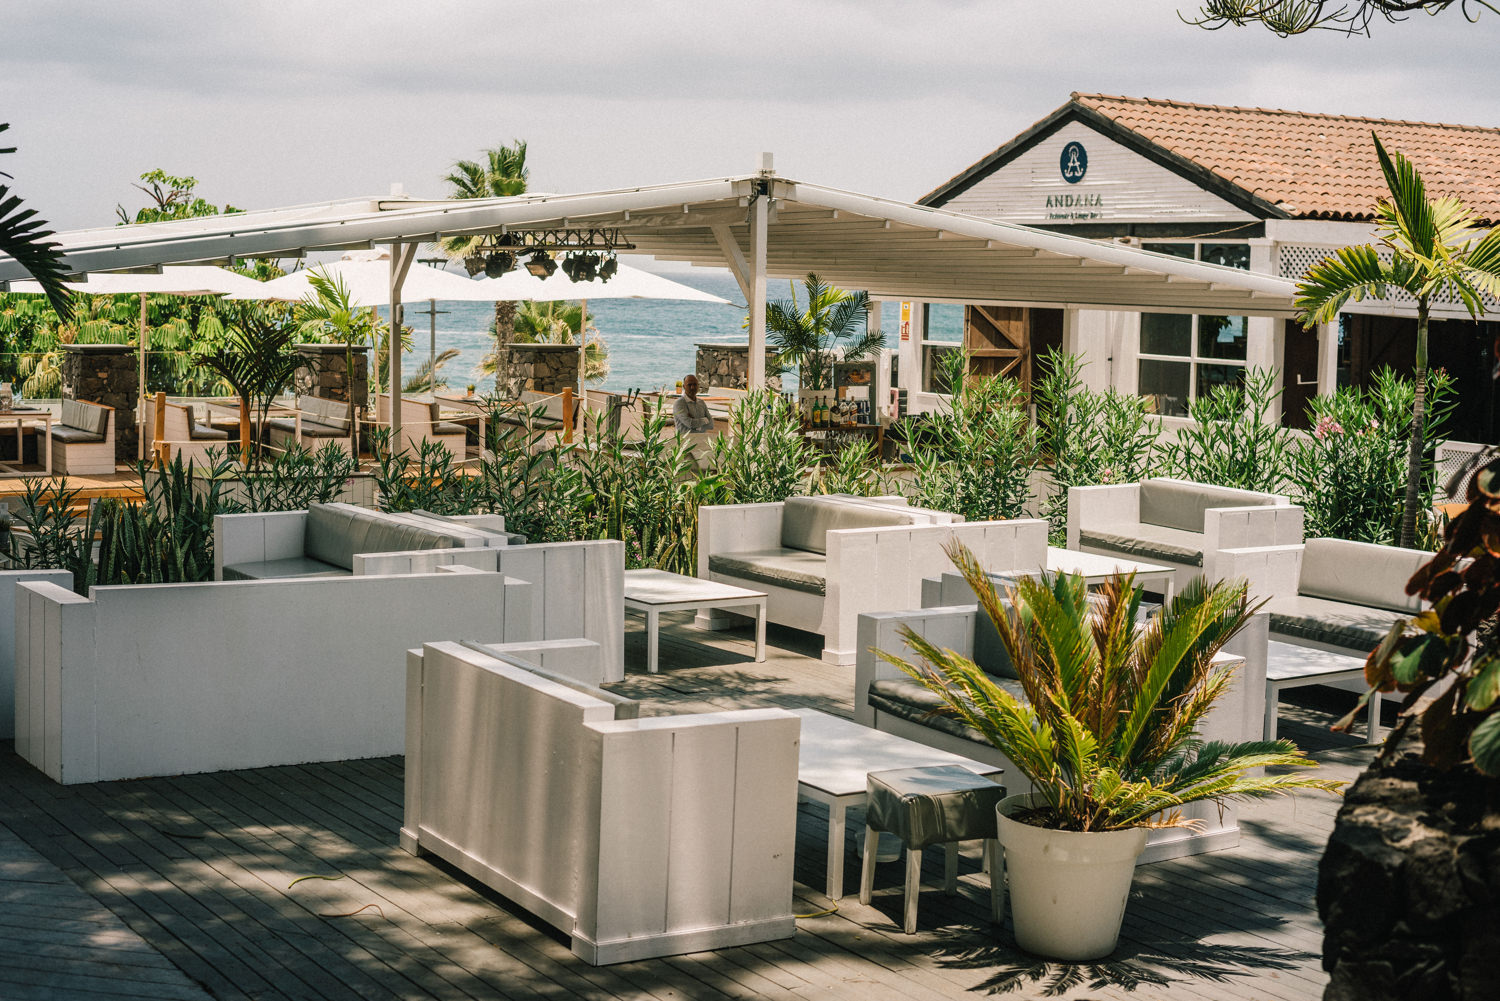 El verano más “trendie” de Tenerife se refresca en Andana Beach Club (Puerto de la Cruz) con su nueva gastronomía viajera y su after lunch frente al Atlántico